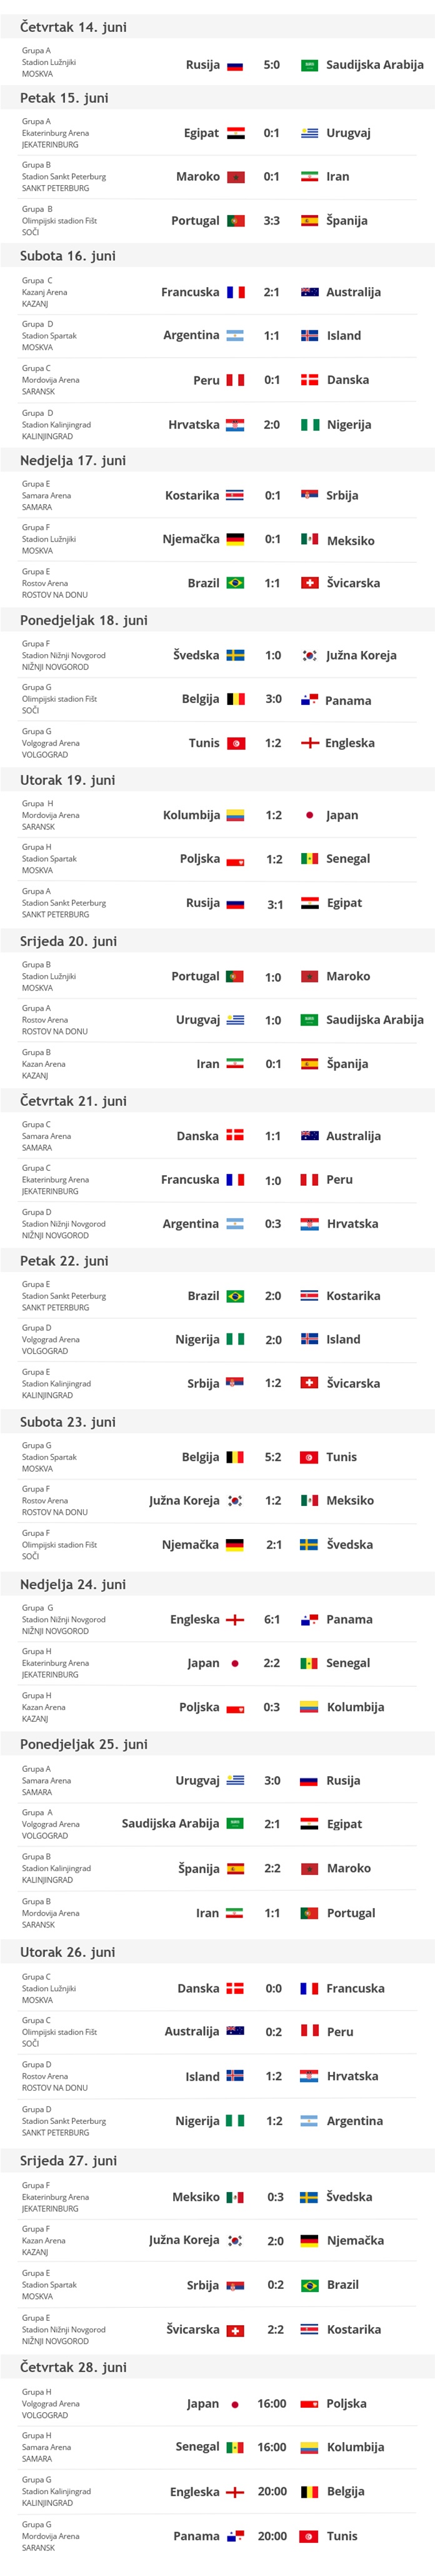 Rezultati i raspored utakmica SP-a Rusija 2018